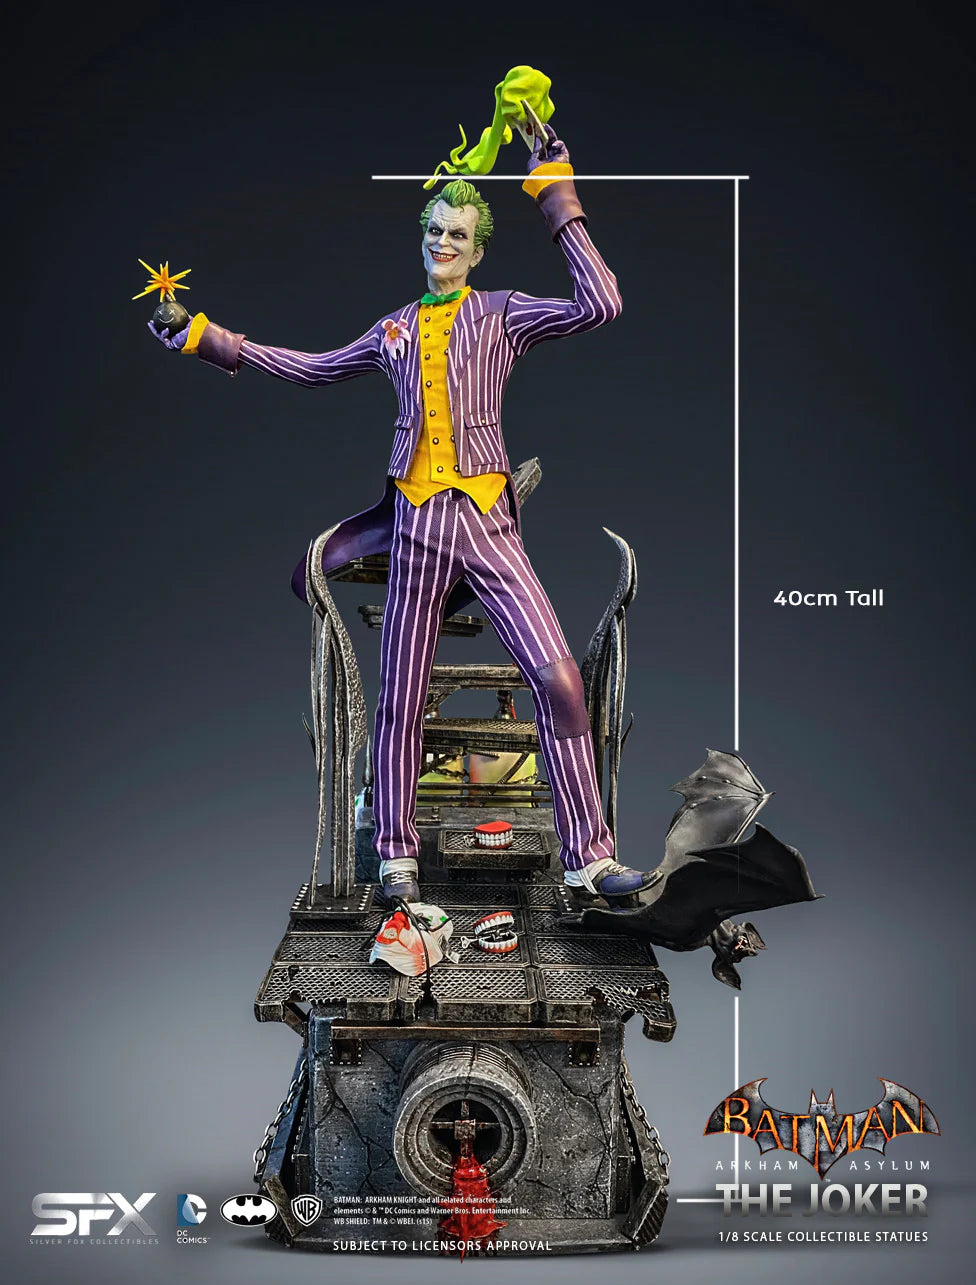 Batman: Joker Arkham Asylum 1/8 Scale Statue